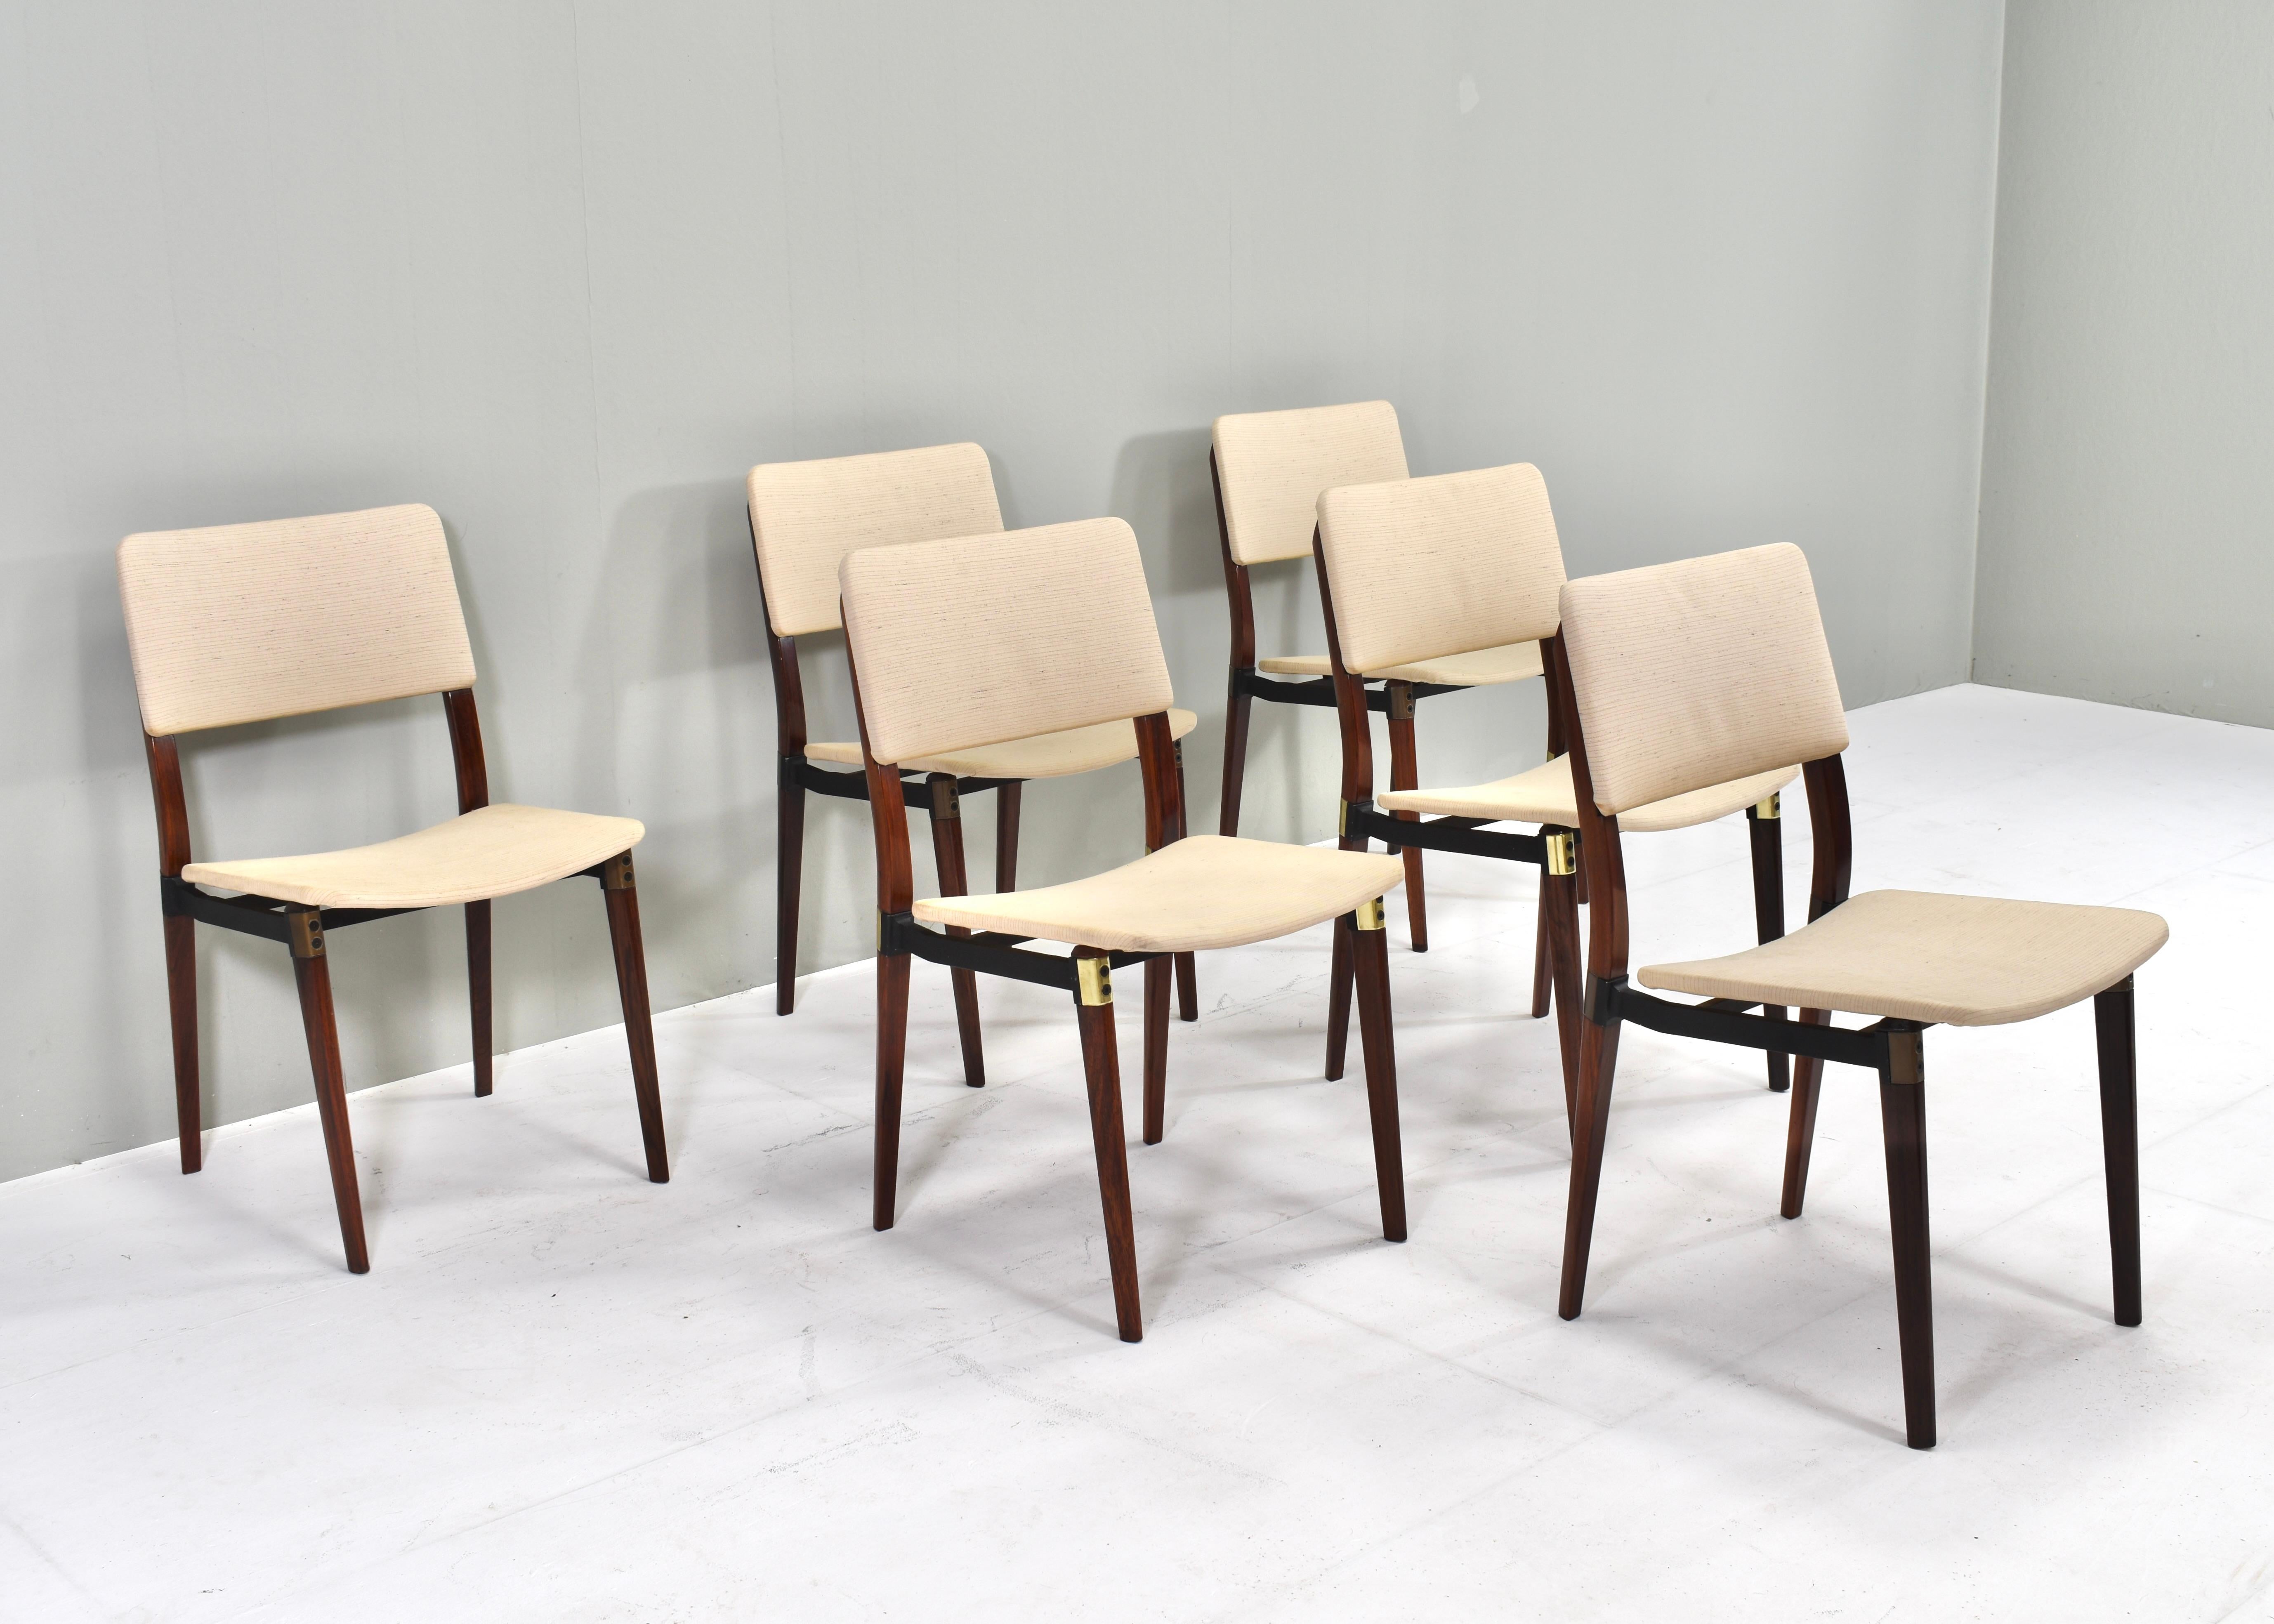 Ensemble de six chaises de salle à manger S82 par Eugenio Gerli (et Osvaldo Borsani) pour Tecno, Italie - vers 1960. 
Les chaises ont encore leur revêtement d'origine et restent en bon état avec des signes normaux d'âge et d'utilisation. Deux